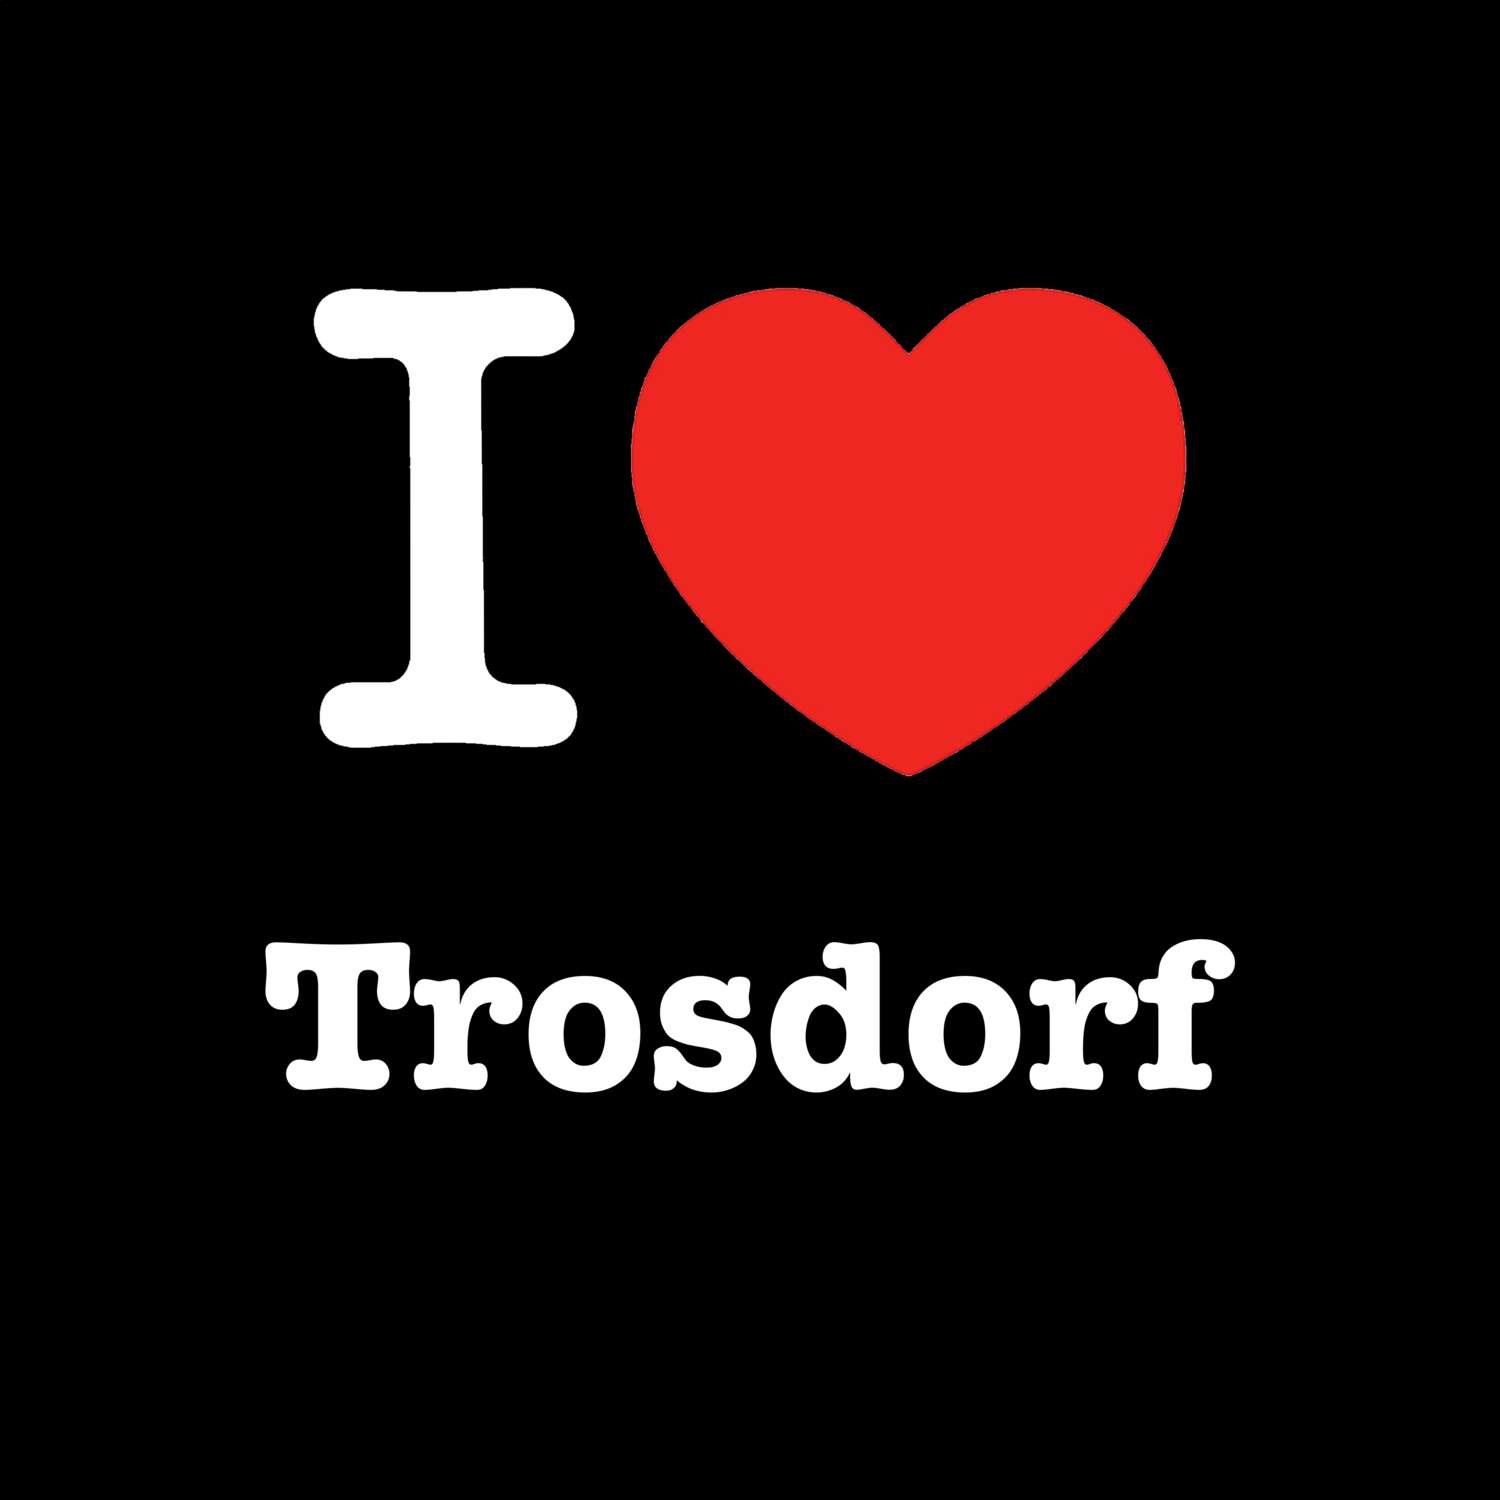 Trosdorf T-Shirt »I love«